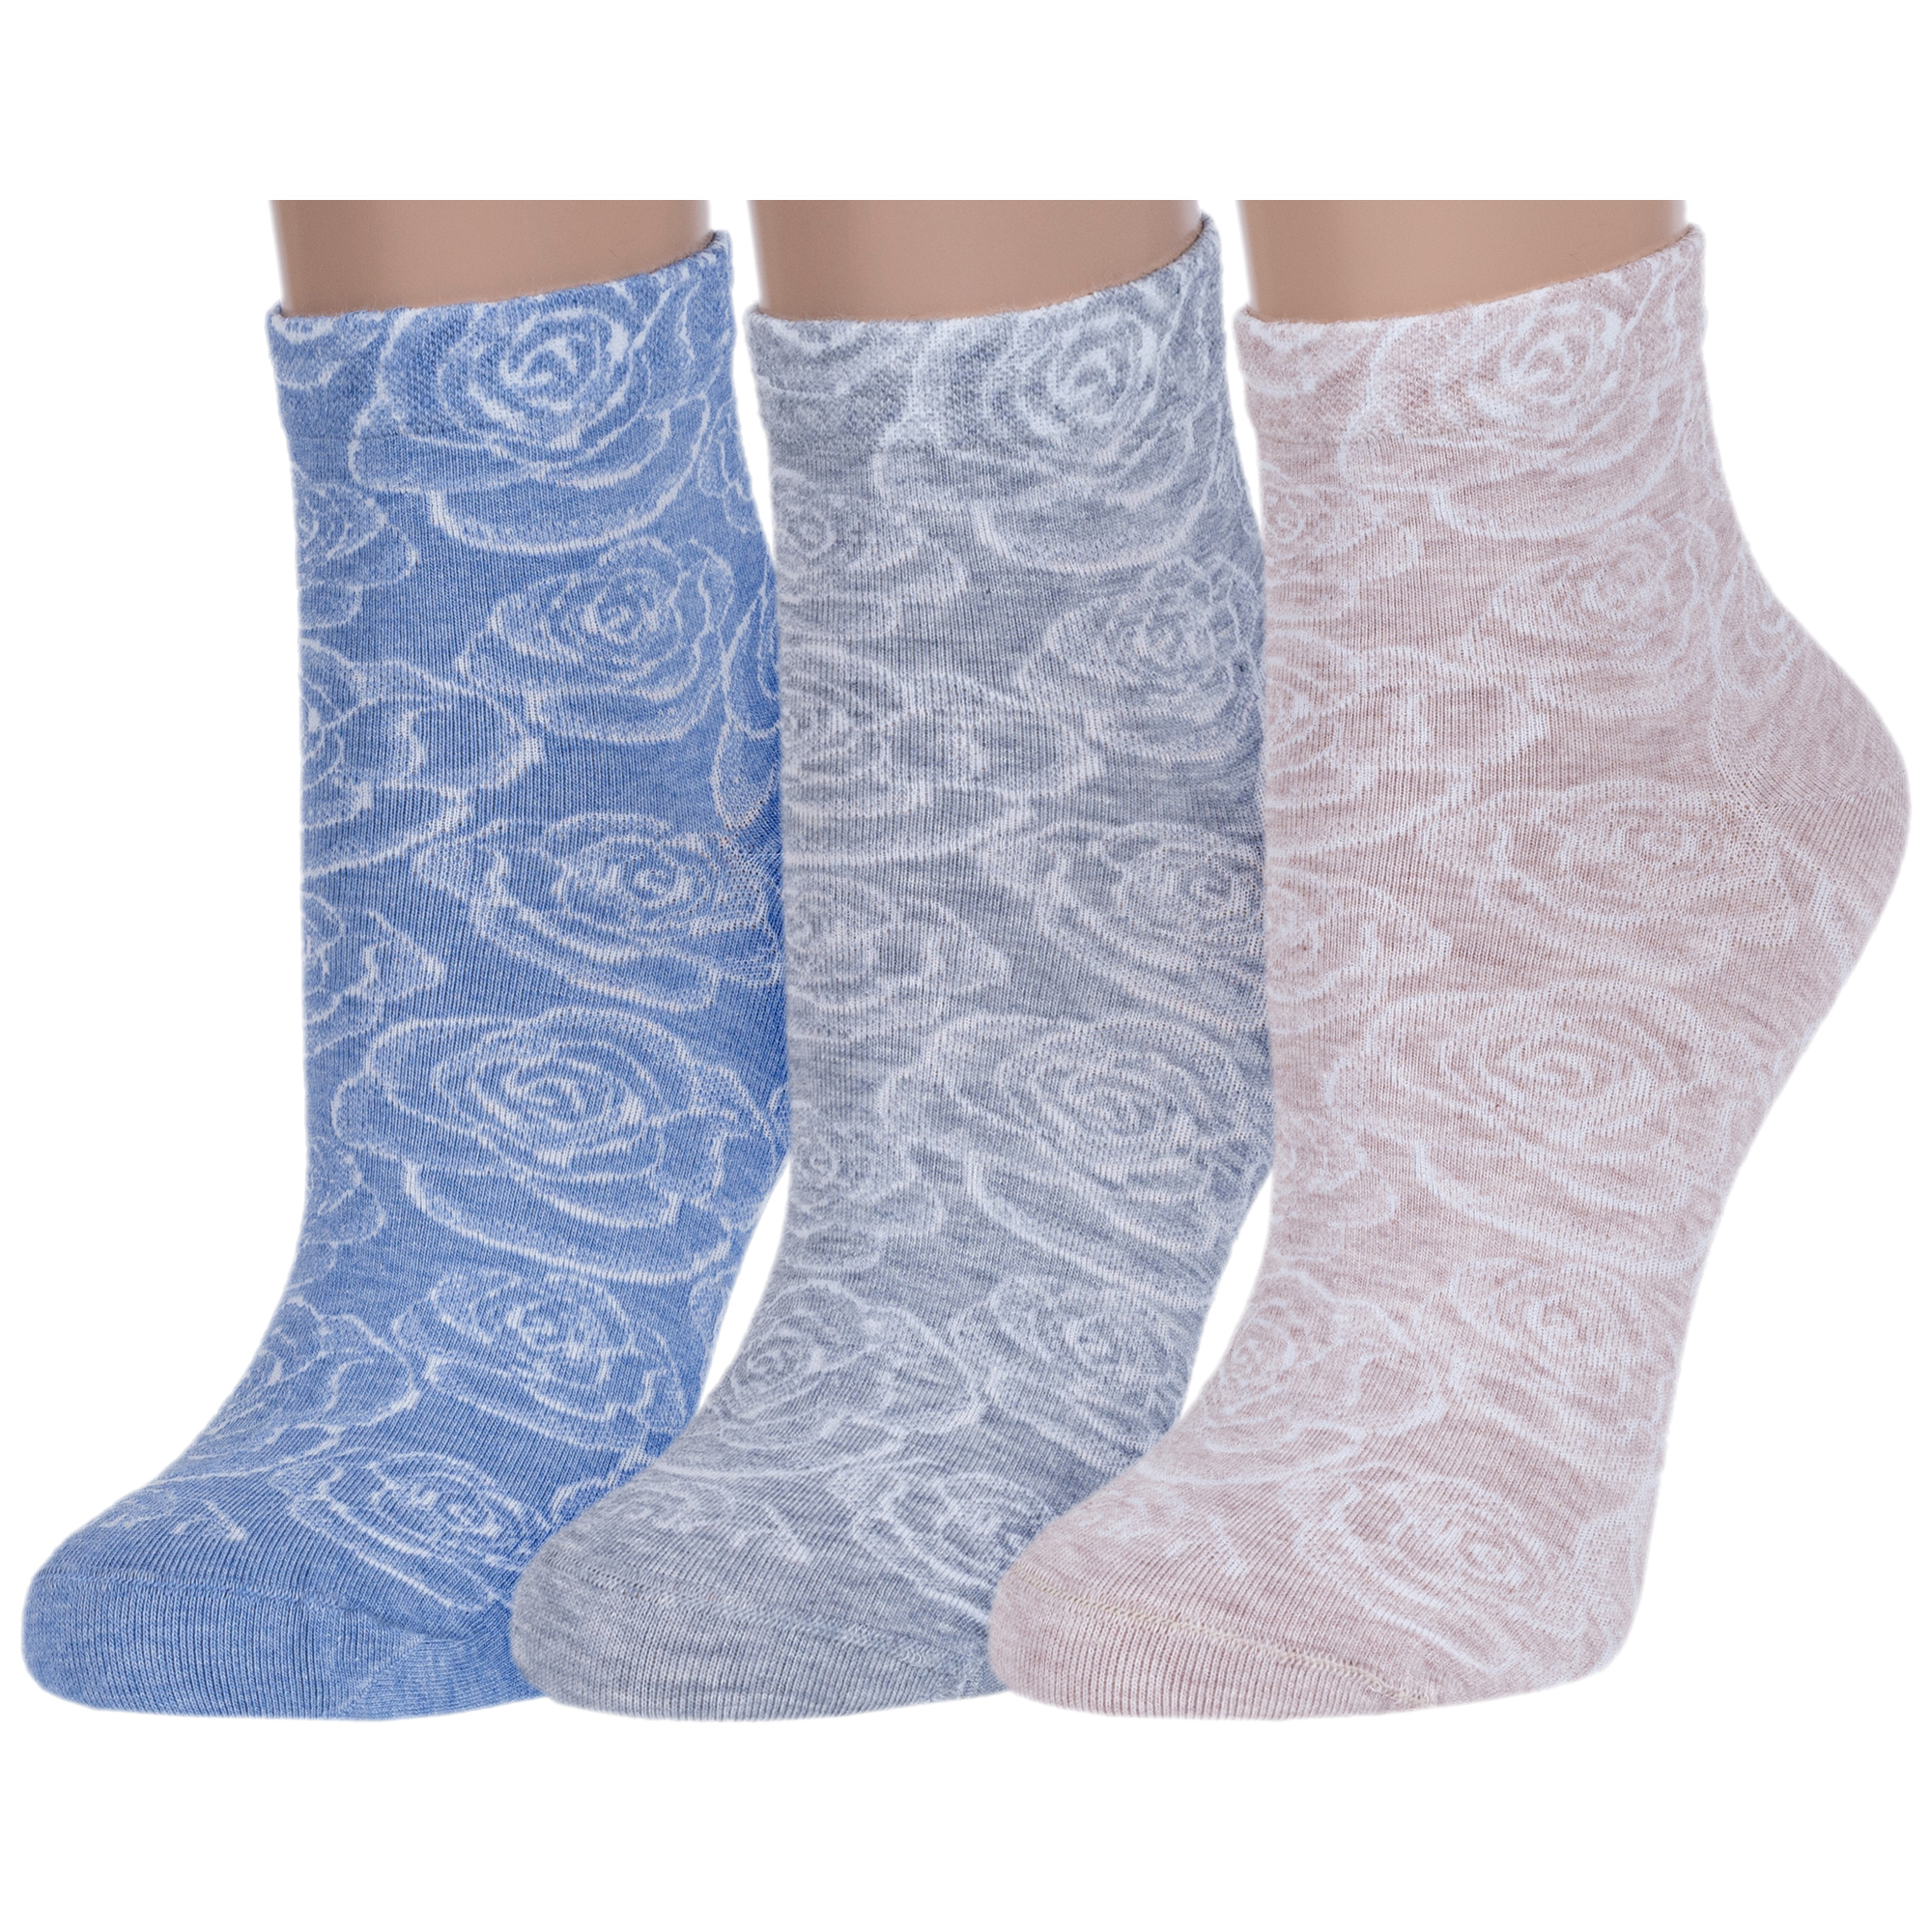 Комплект носков женских Rusocks 3-Ж-1526 синих; серых; бежевых 23-25